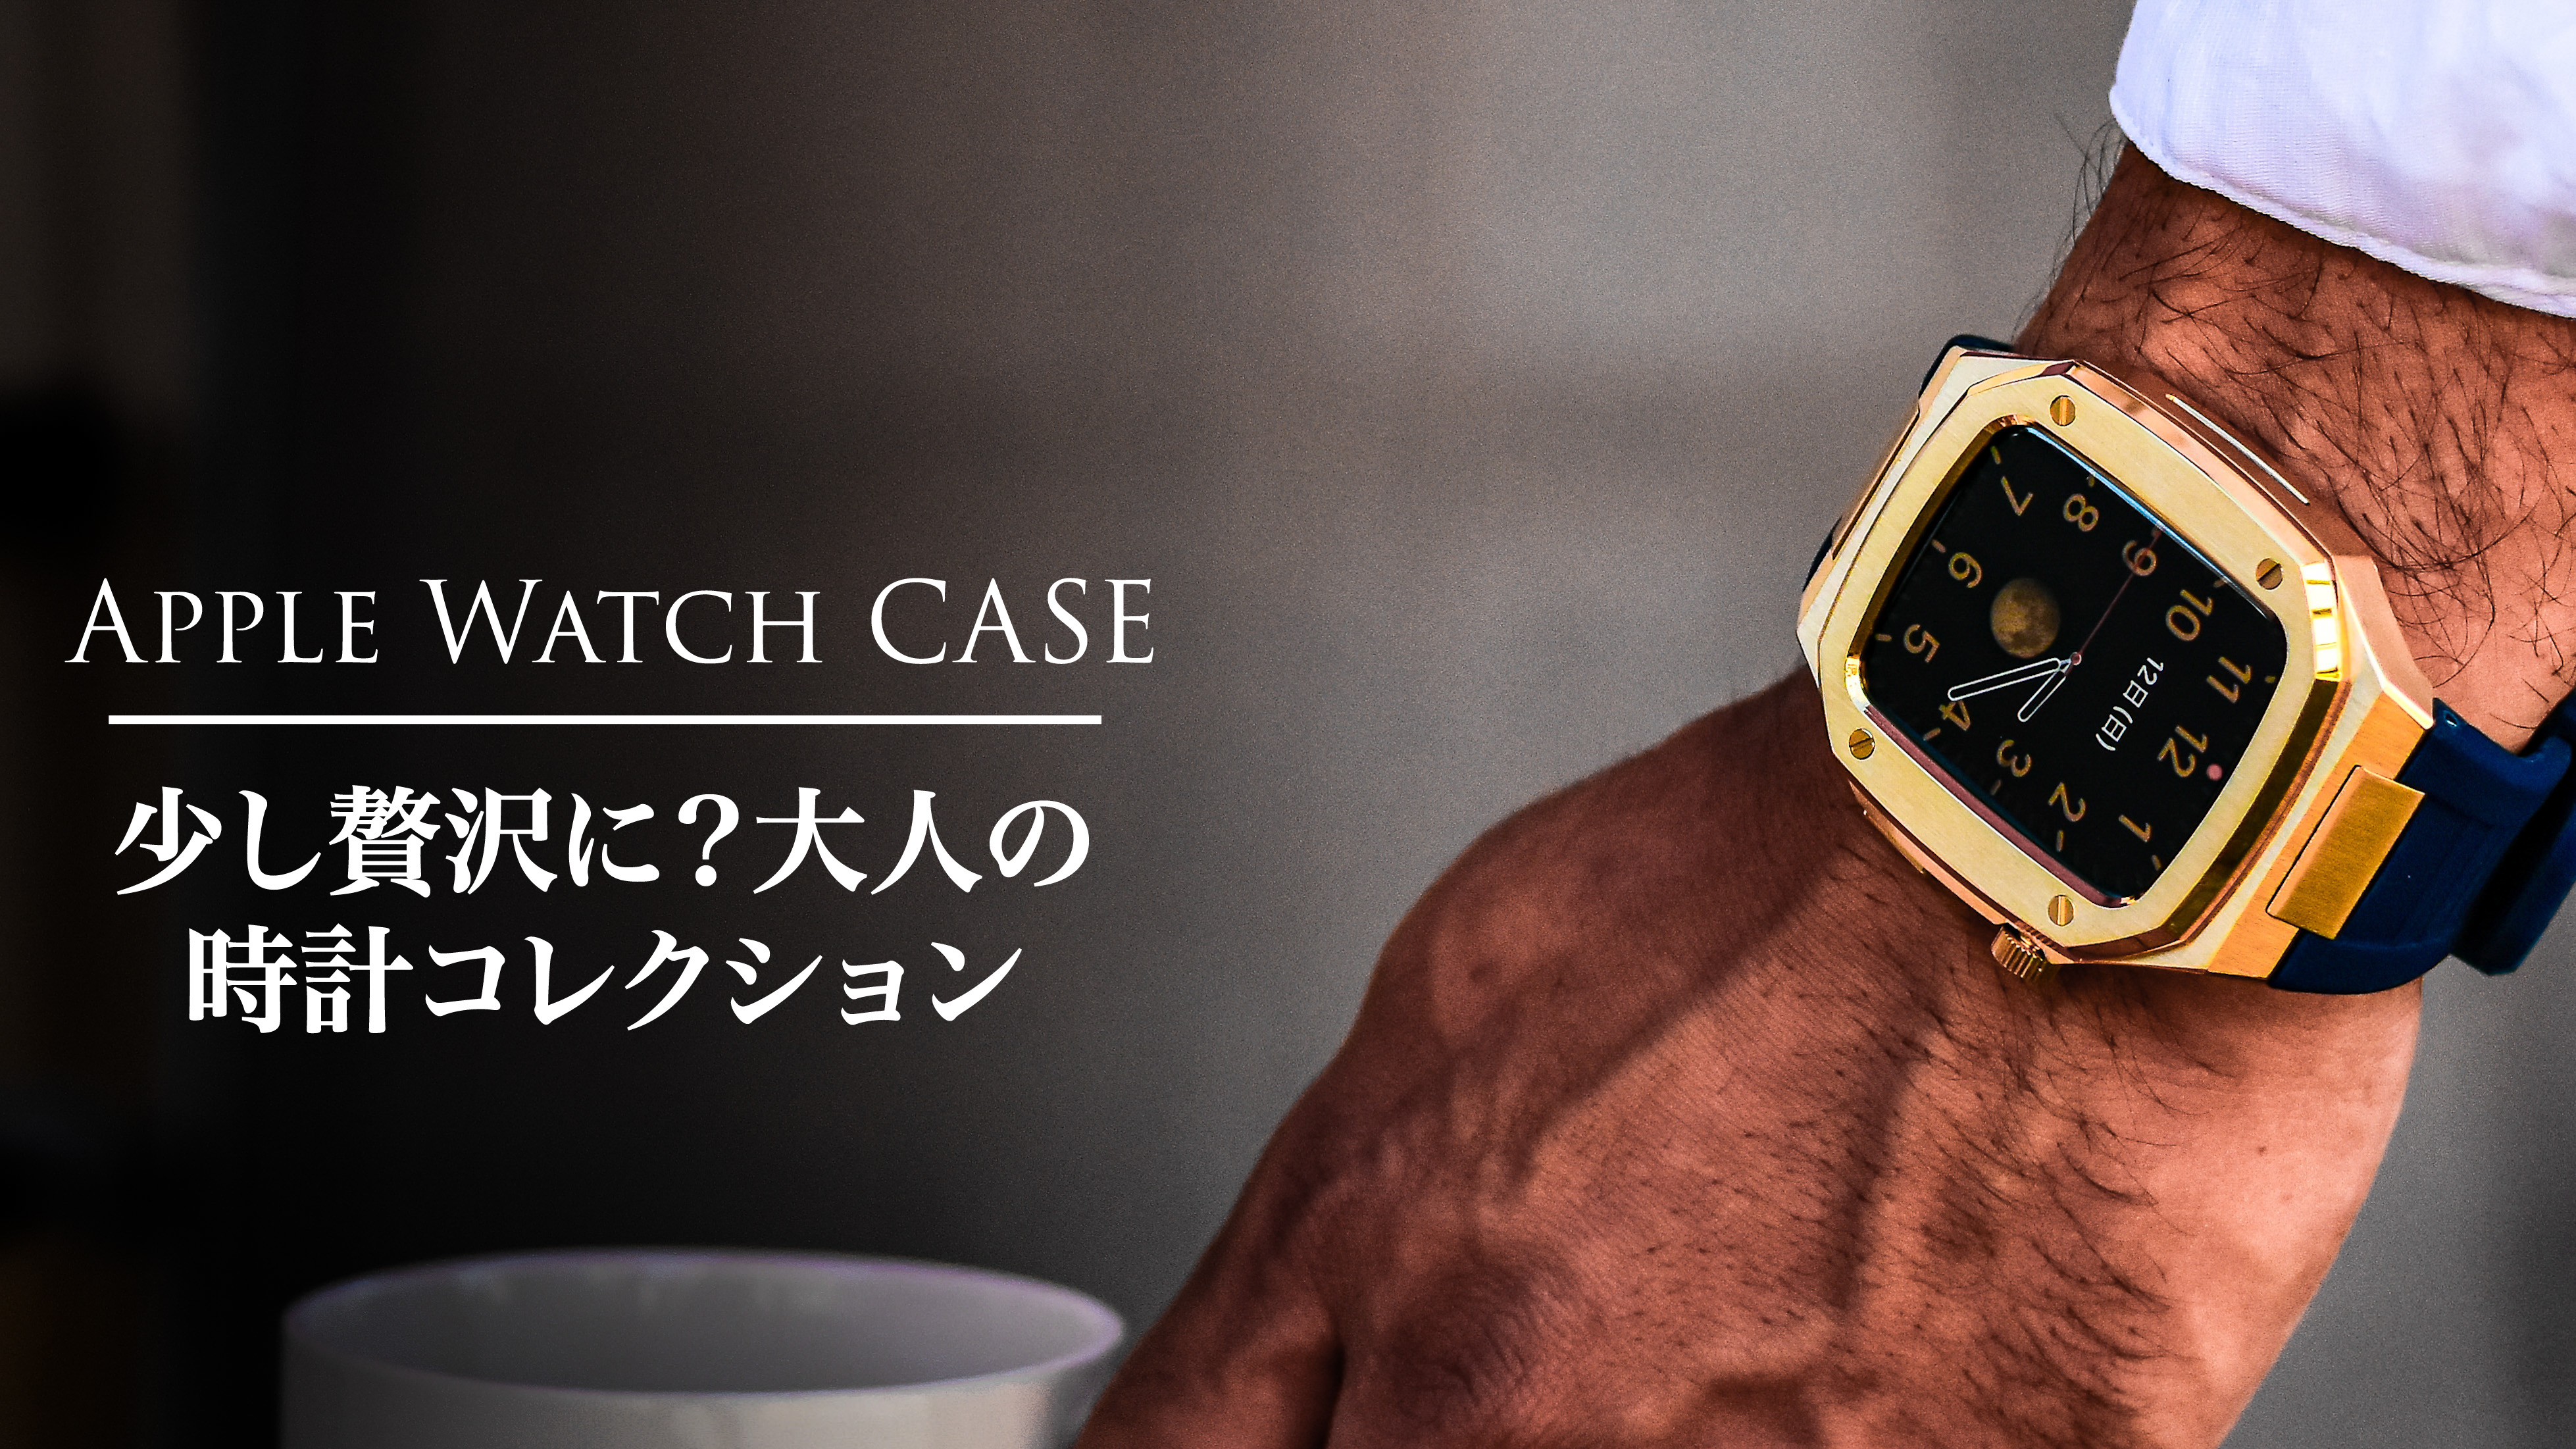 Apple Watch CASE